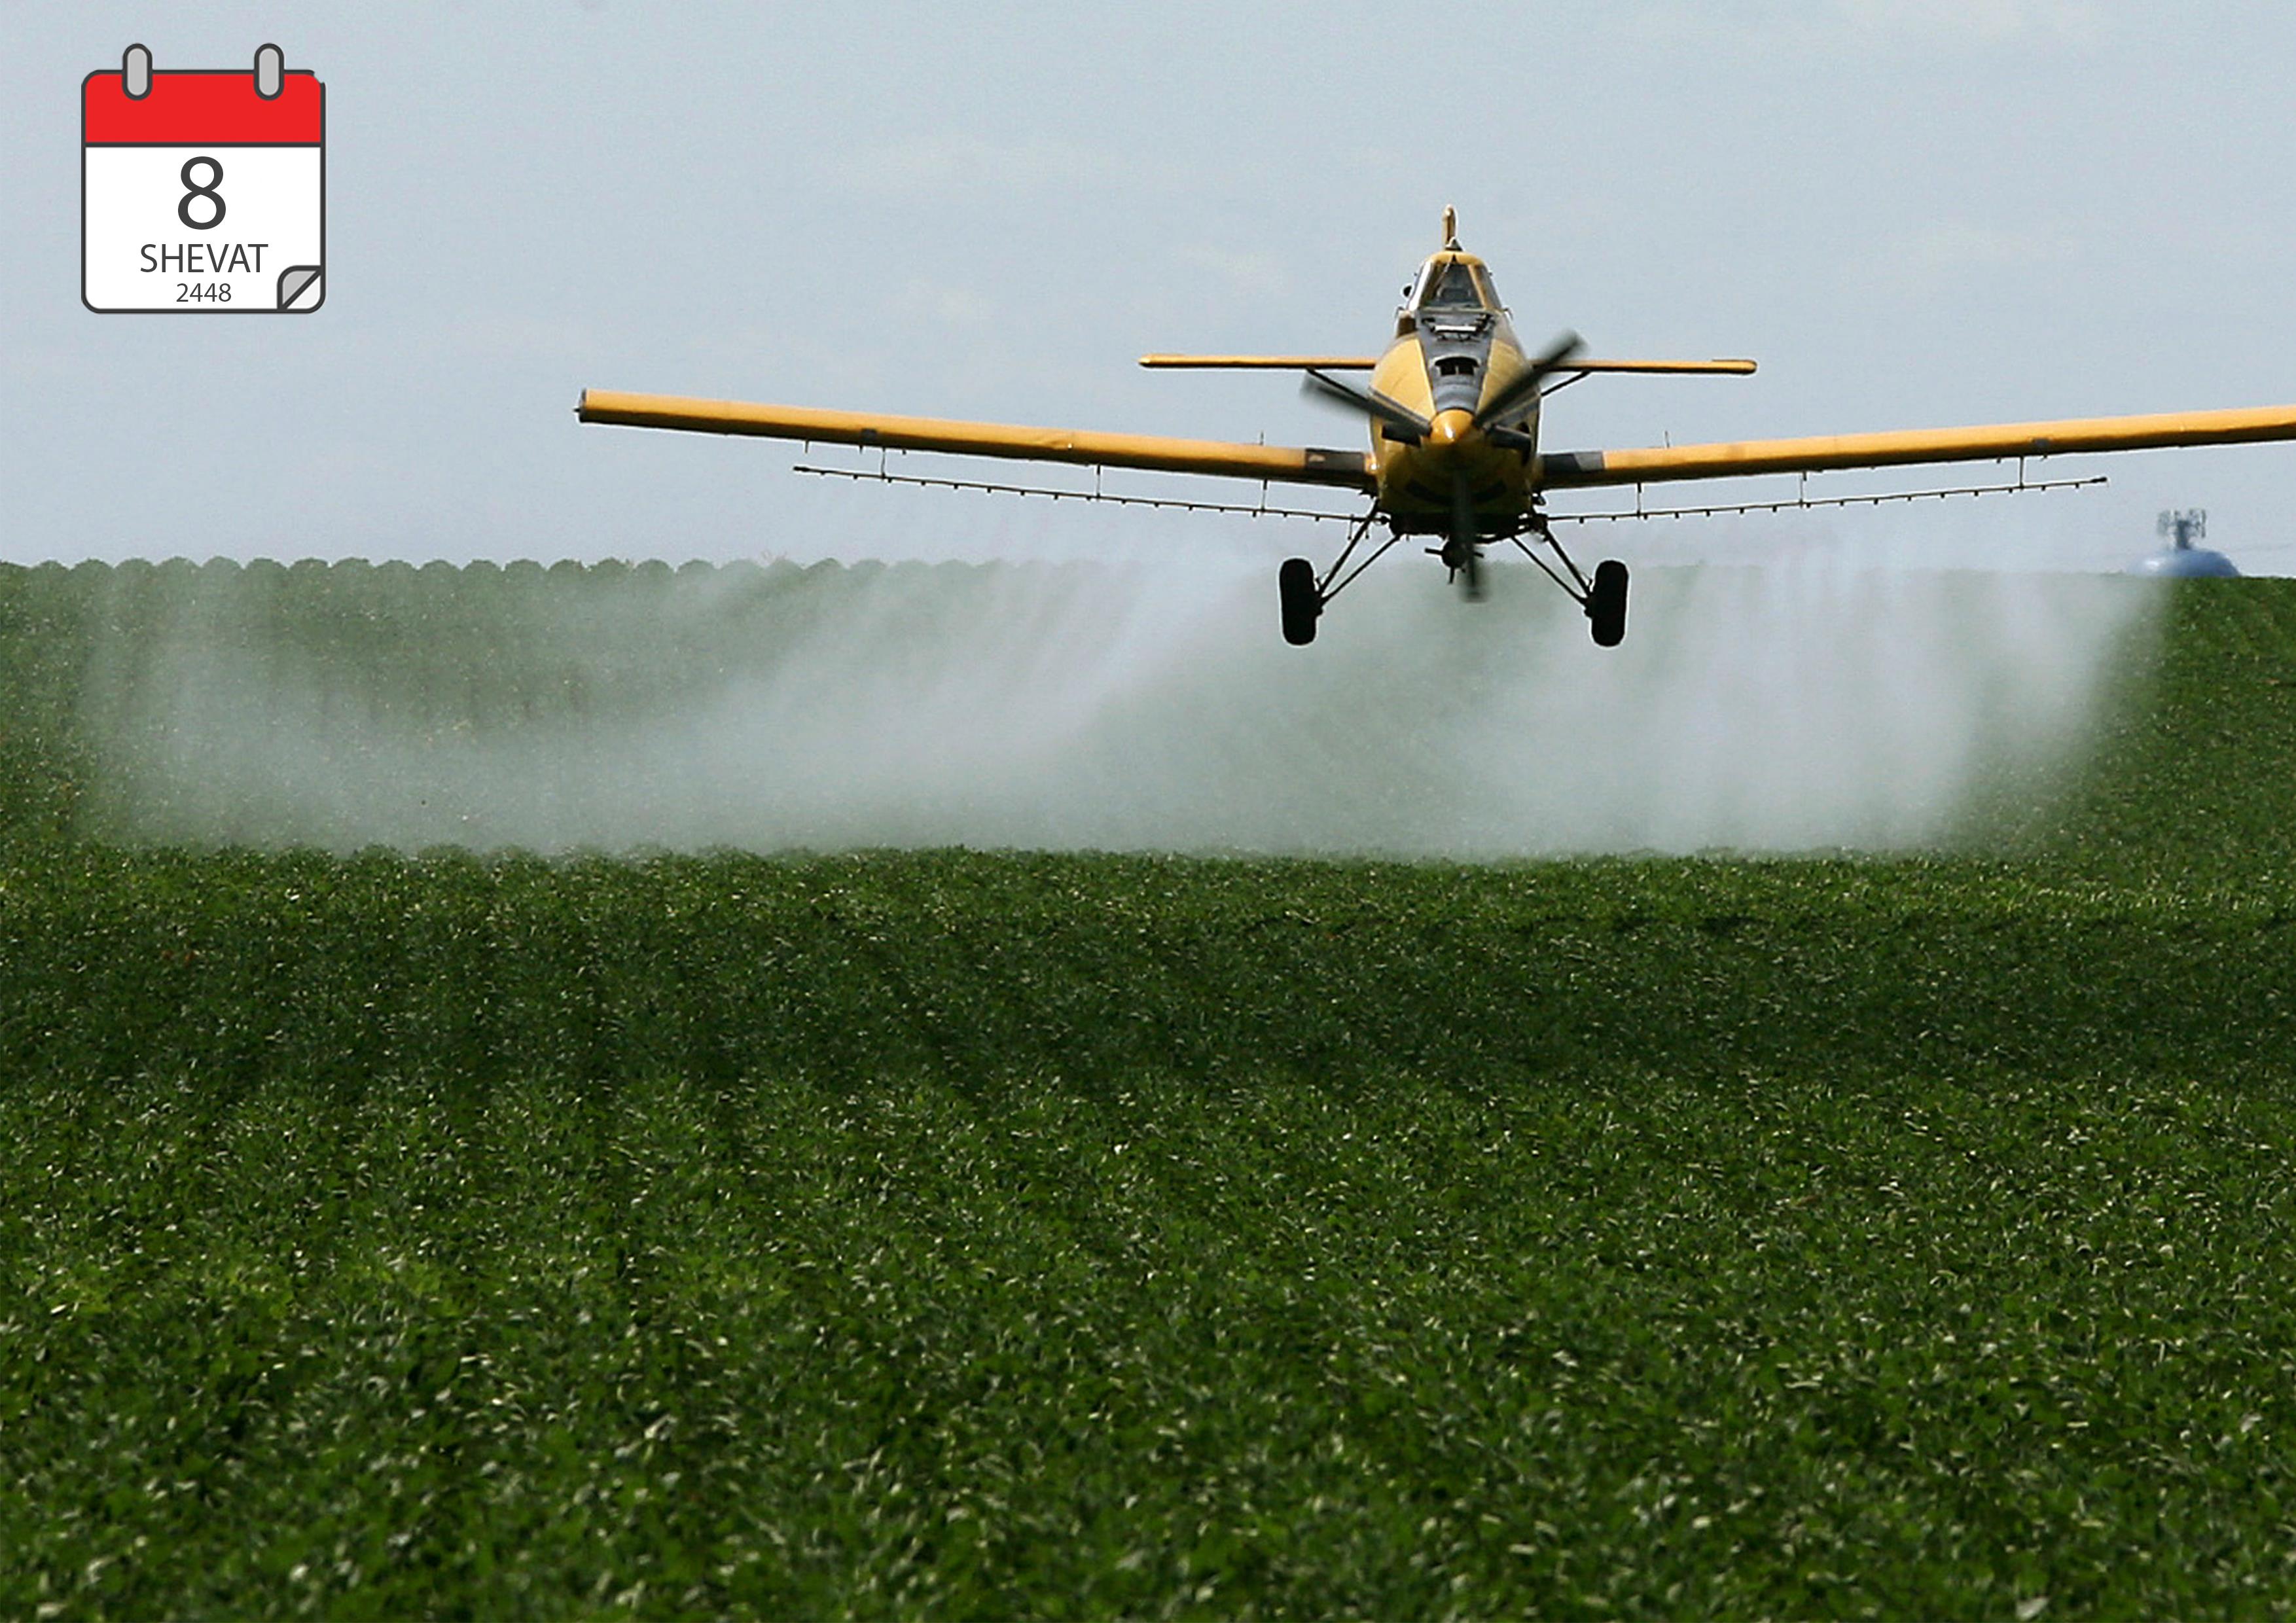 Обработка полей пестицидами. АН 2 опрыскиватель. Распыление пестицидов. Сельскохозяйственный самолет. Авиация в сельском хозяйстве.